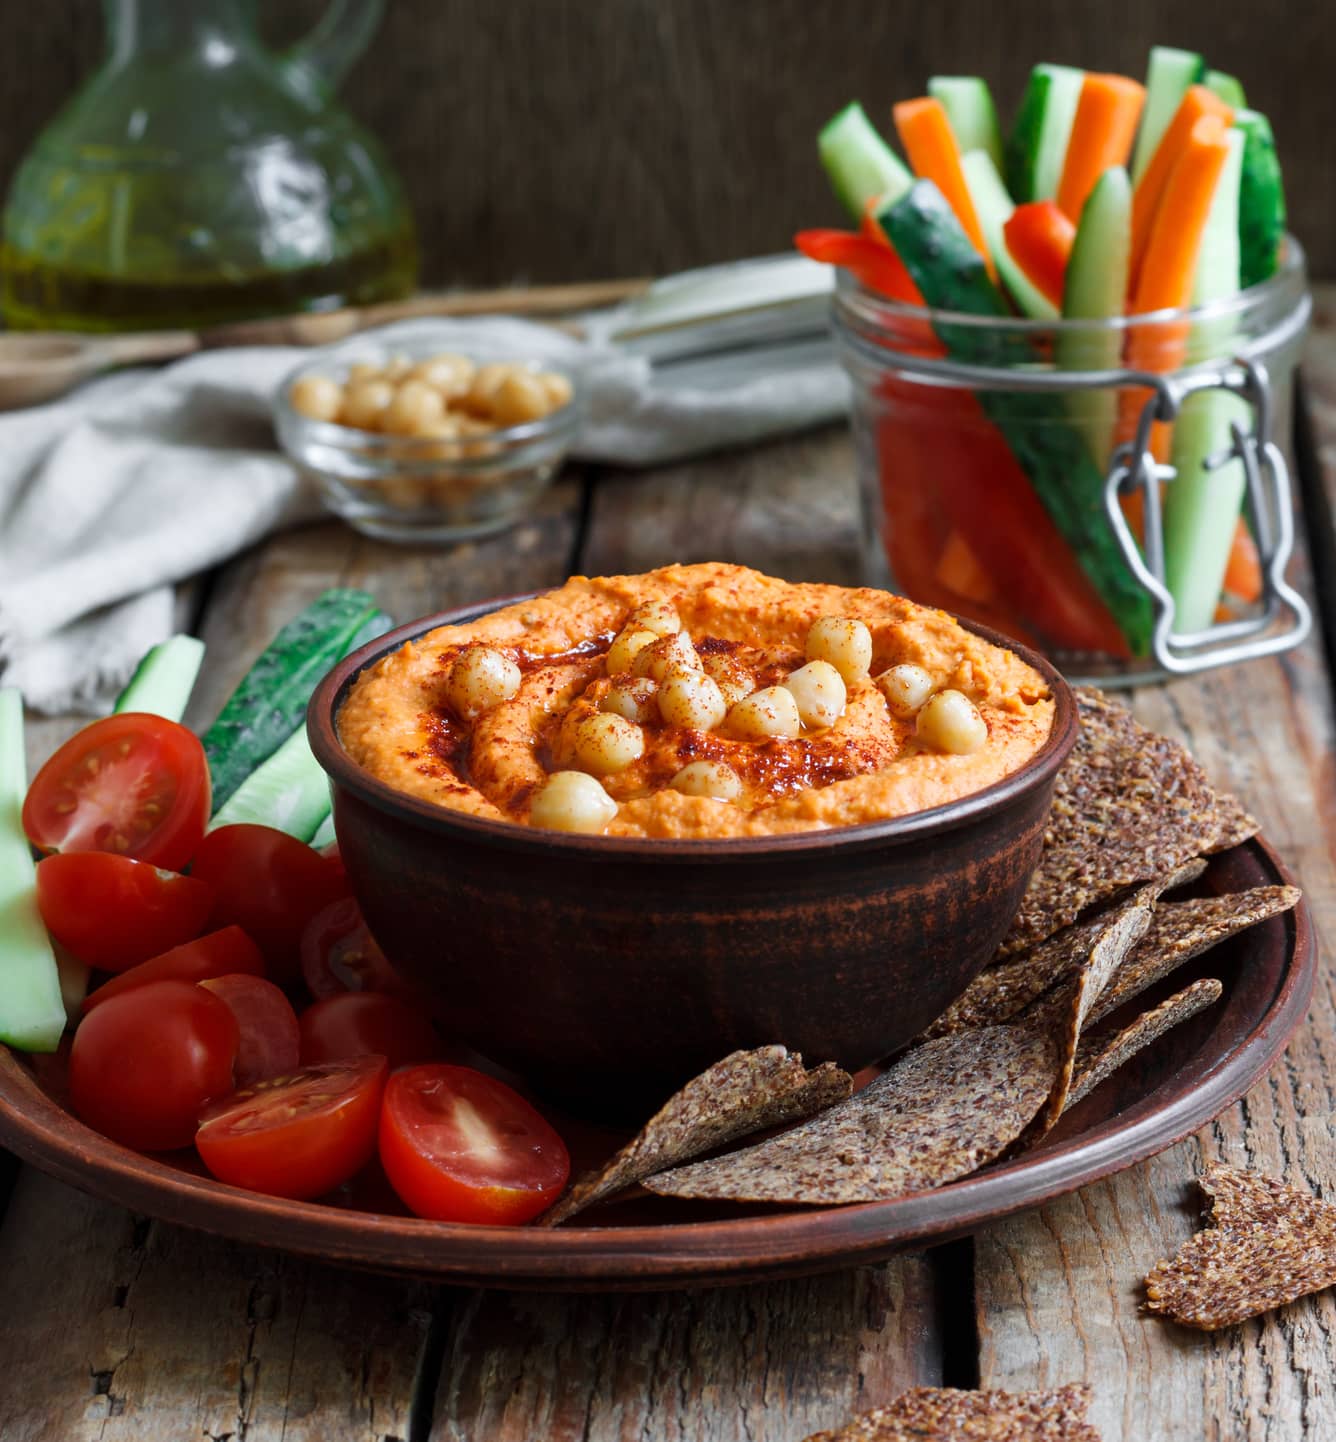 Taça com hummus, acompanhada de palitos de pepino e cenoura, tomates cherry e tostas integrais.